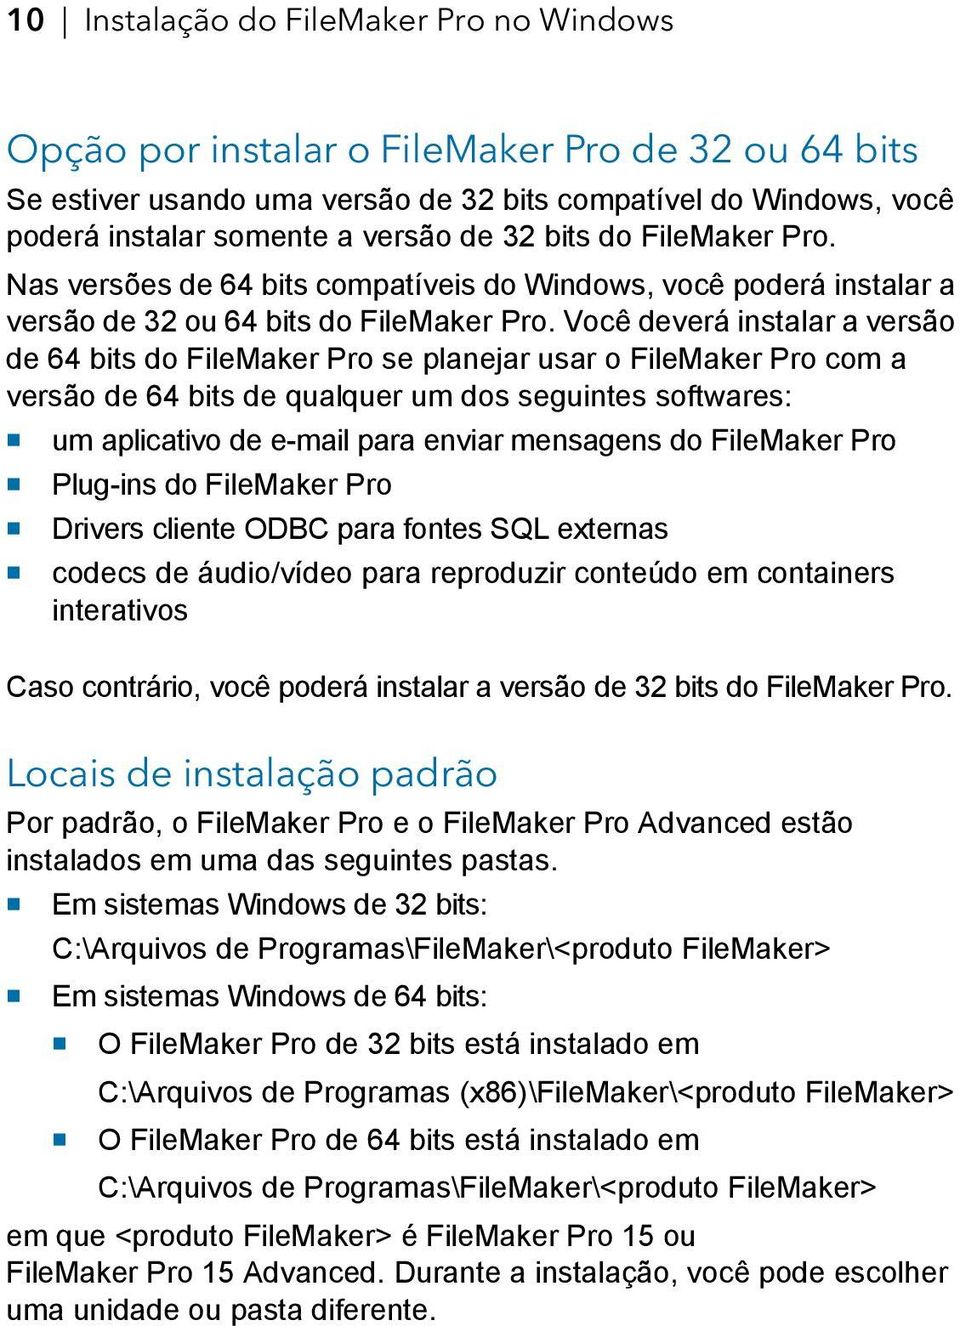 Você deverá instalar a versão de 64 bits do FileMaker Pro se planejar usar o FileMaker Pro com a versão de 64 bits de qualquer um dos seguintes softwares: 1 um aplicativo de e-mail para enviar